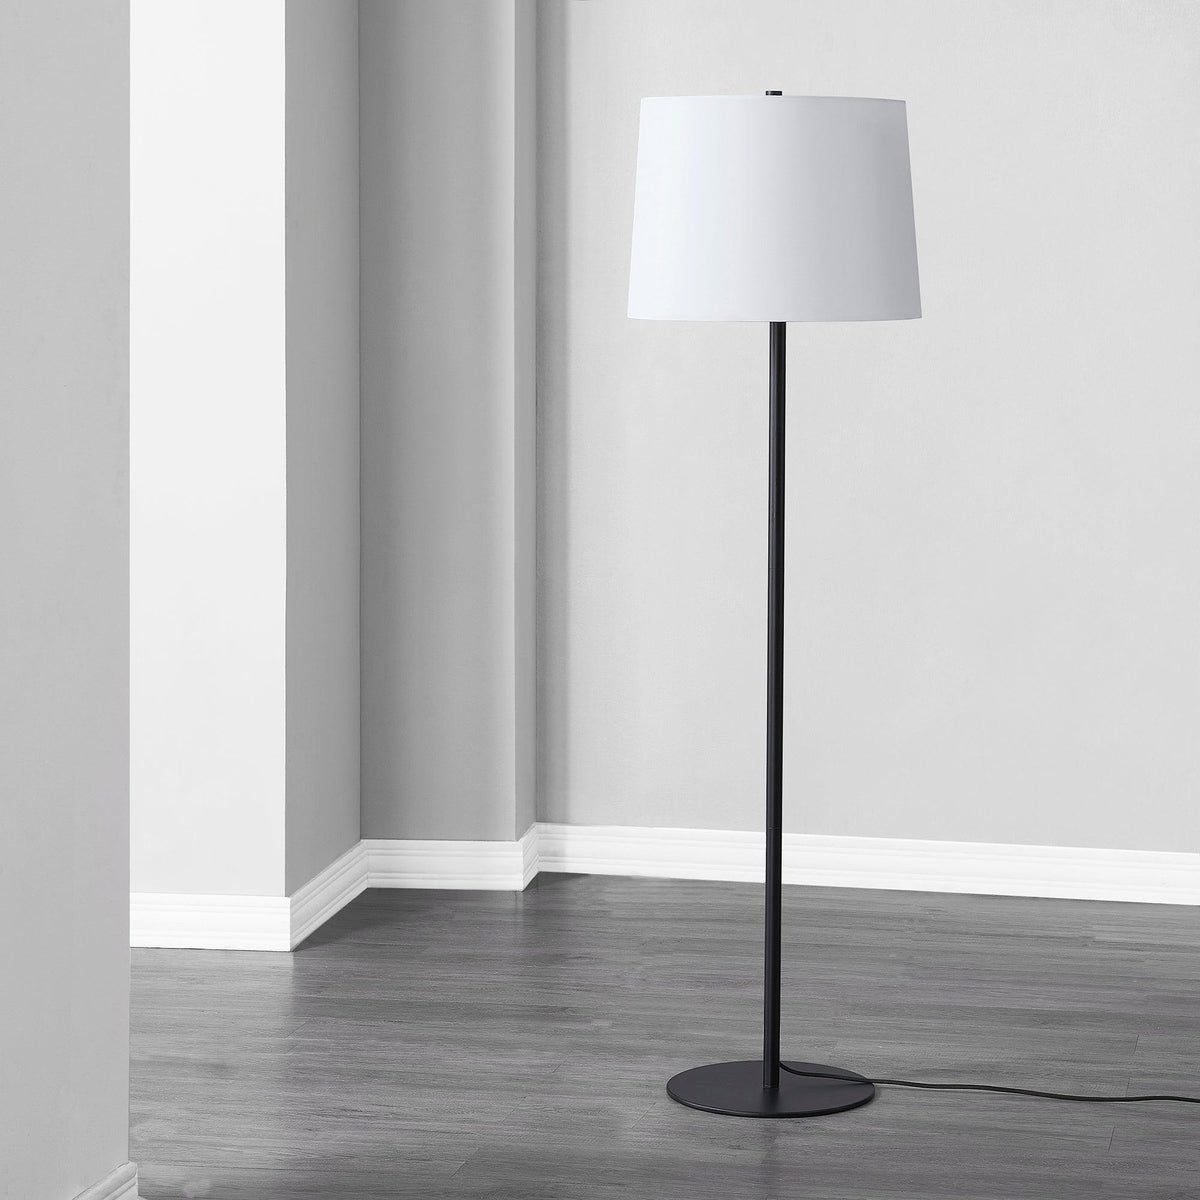 Renwil - Nevin Floor Lamp - LPF3139 | Montreal Lighting & Hardware